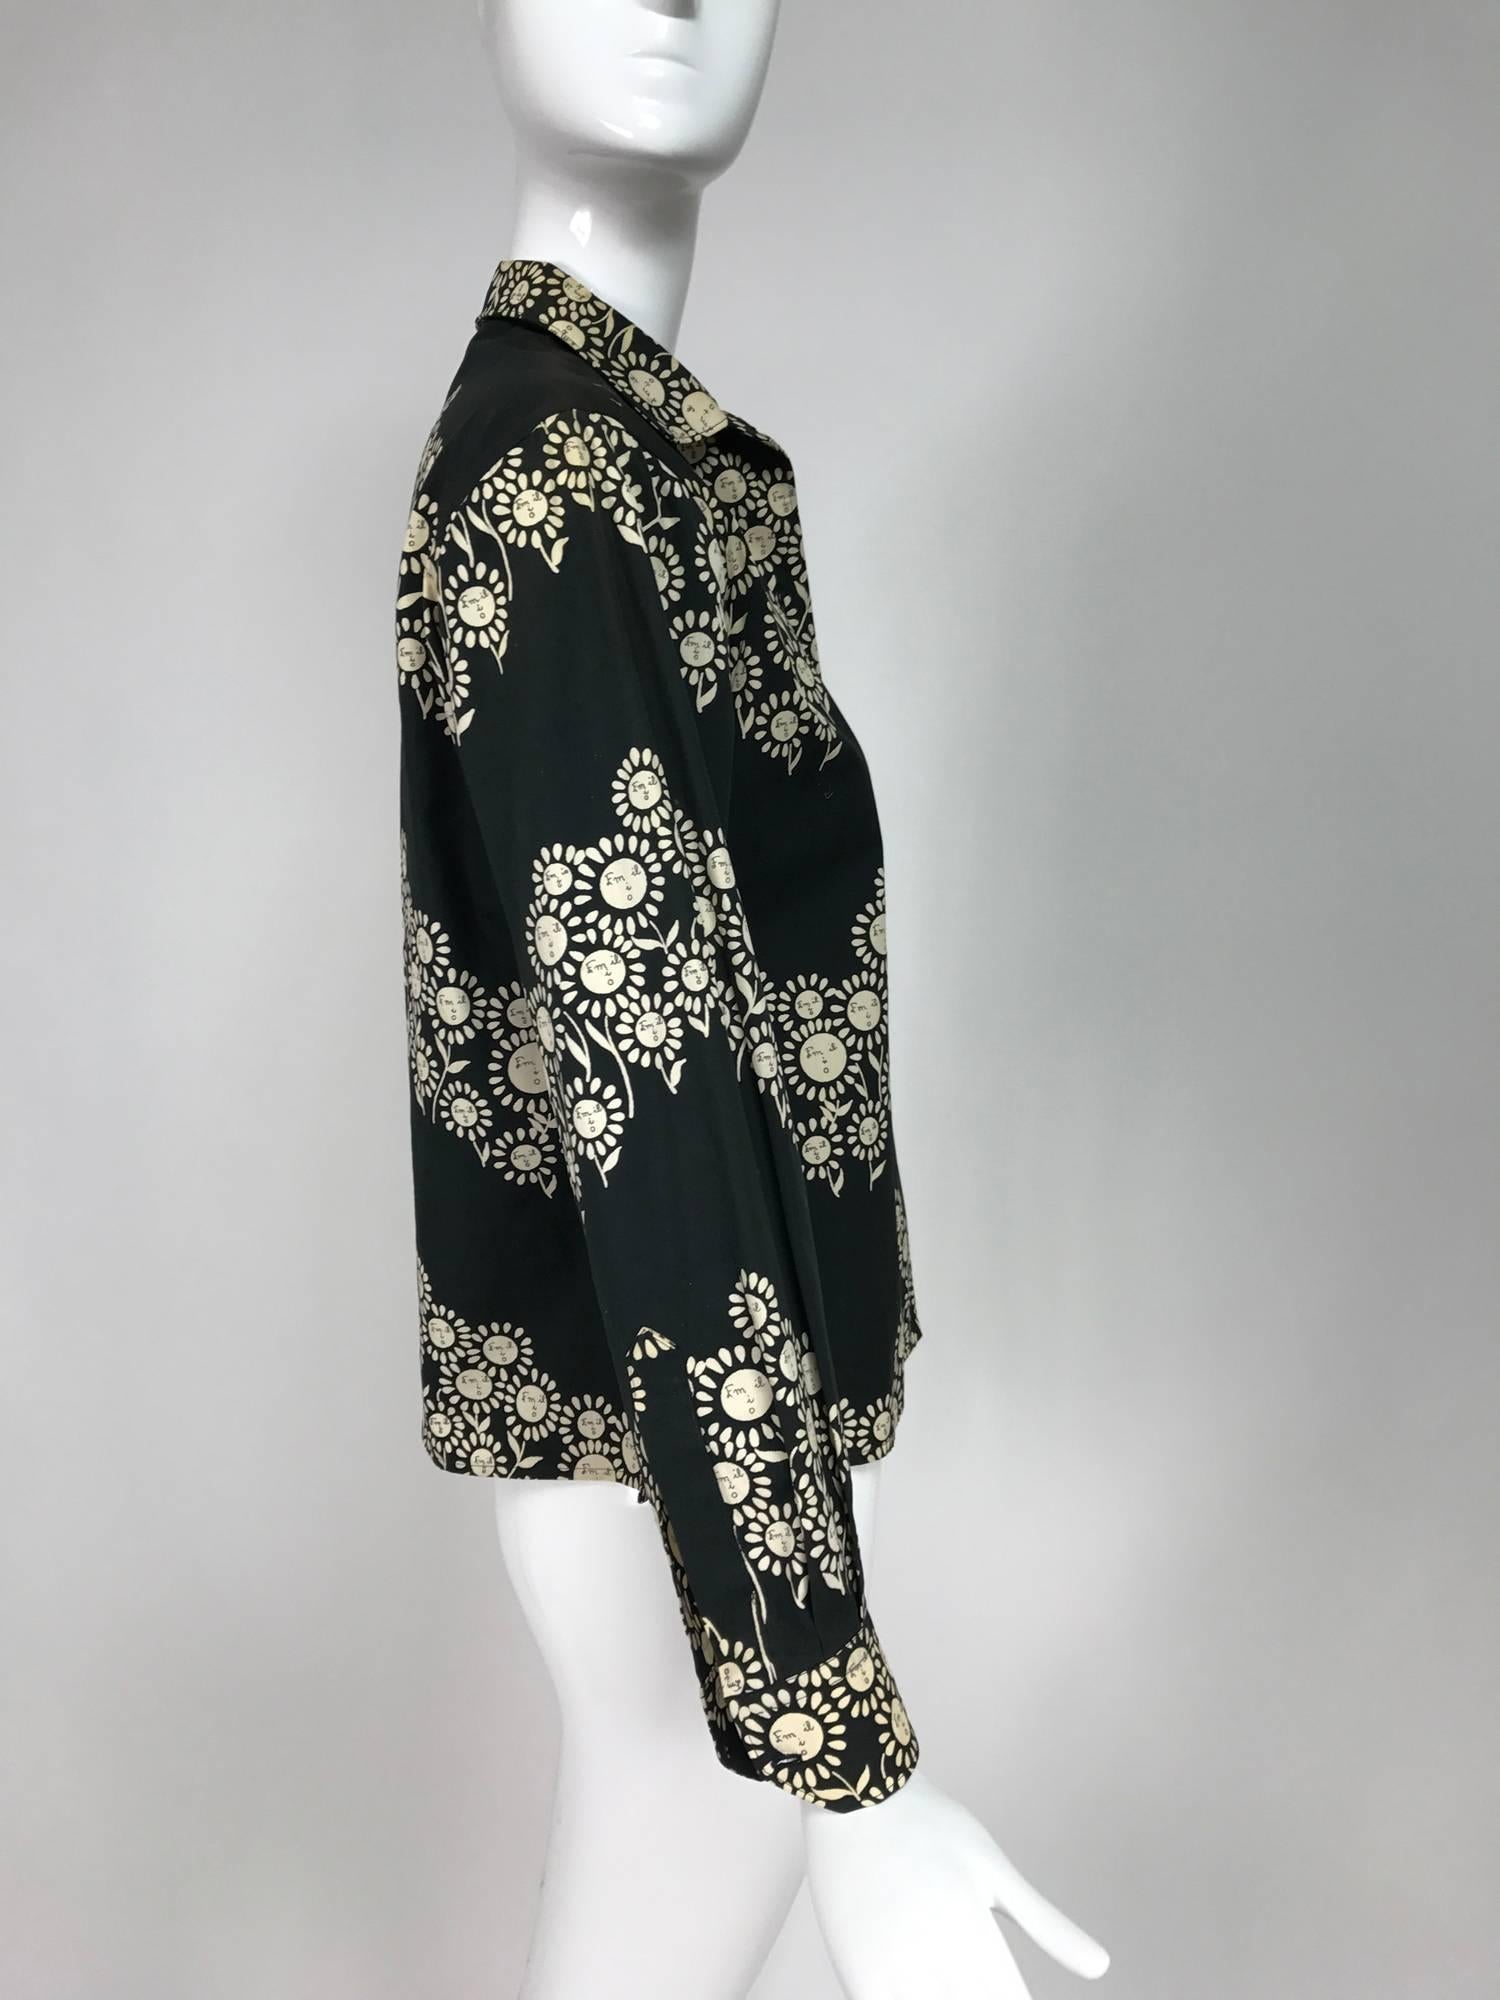 Rare Vintage Emilio Pucci black and white cotton floral blouse 1950s 1